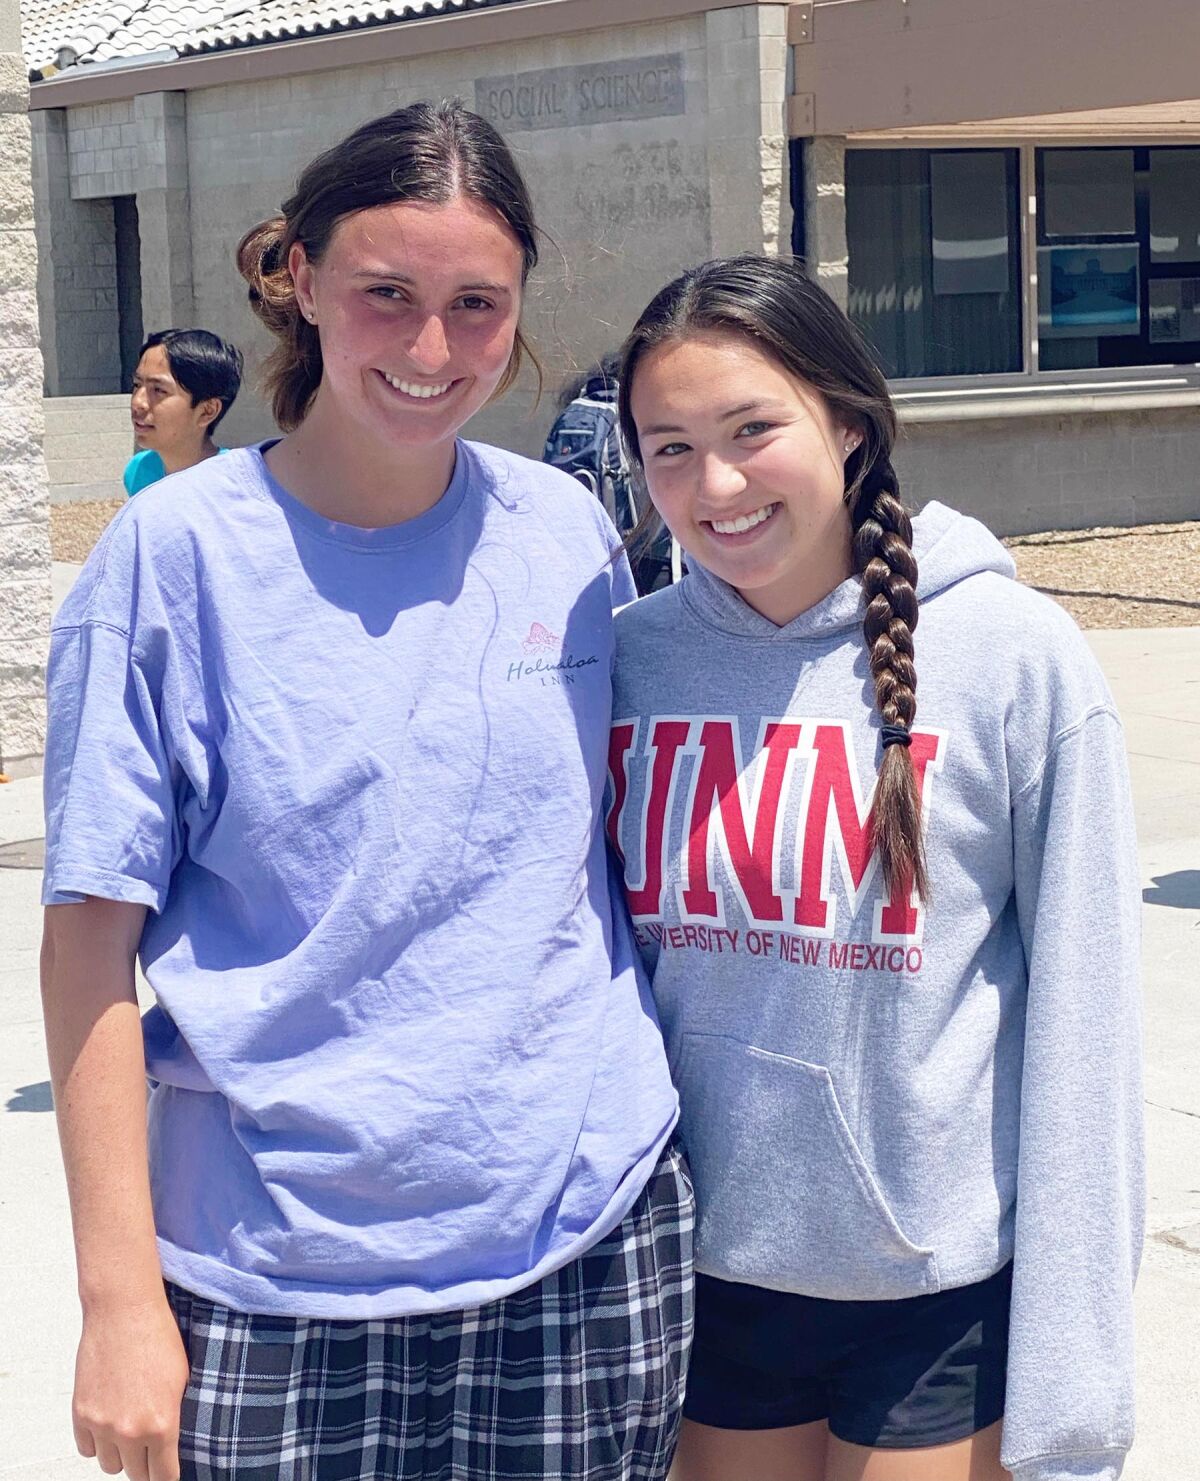 The 2022 Rancho Bernardo Community Council student representatives are Sofia Caruso and Lilia Montiel.